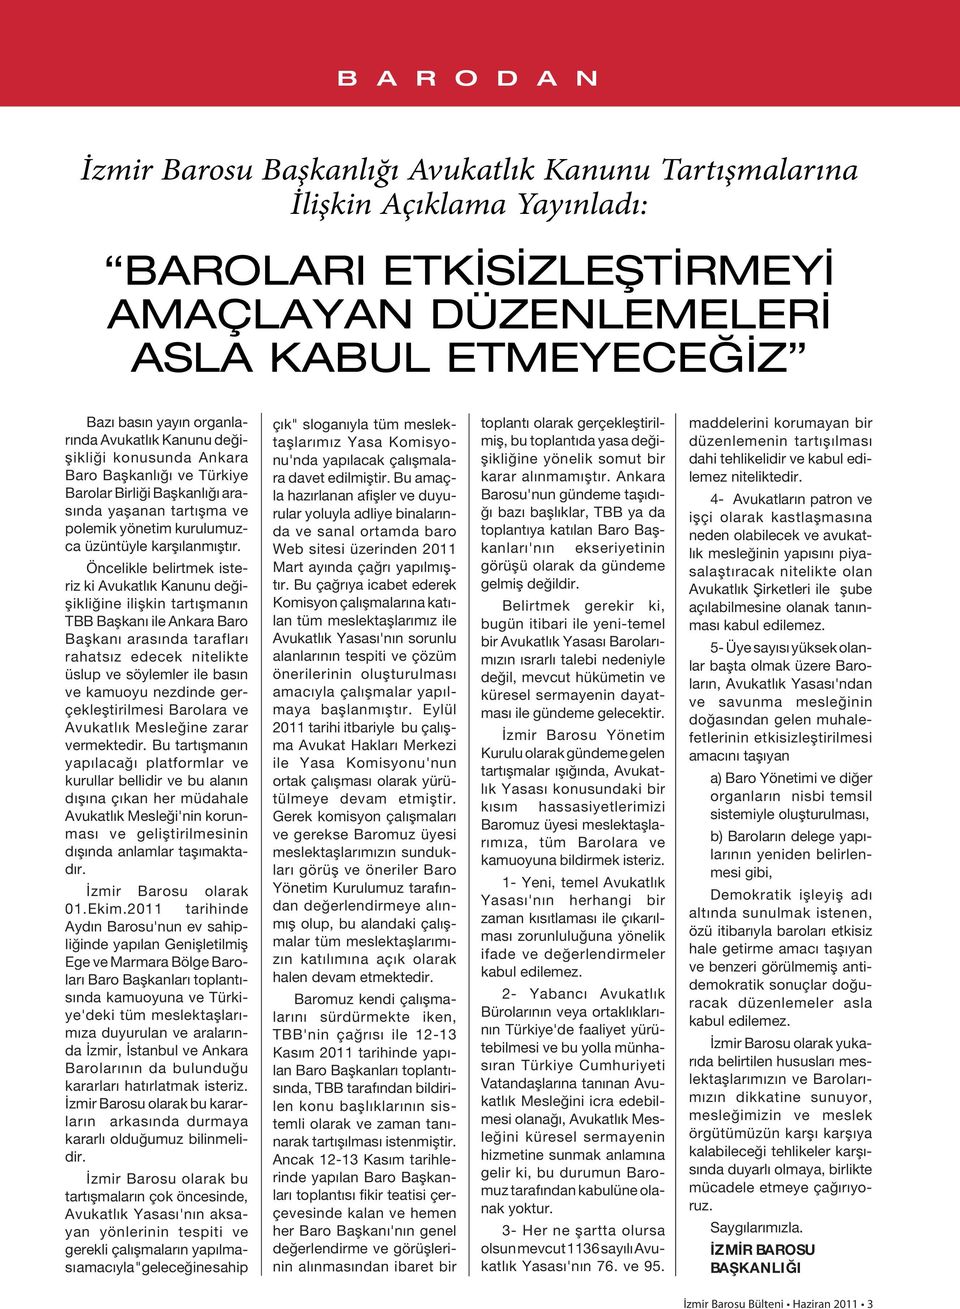 Öncelikle belirtmek isteriz ki Avukatlık Kanunu değişikliğine ilişkin tartışmanın TBB Başkanı ile Ankara Baro Başkanı arasında tarafları rahatsız edecek nitelikte üslup ve söylemler ile basın ve